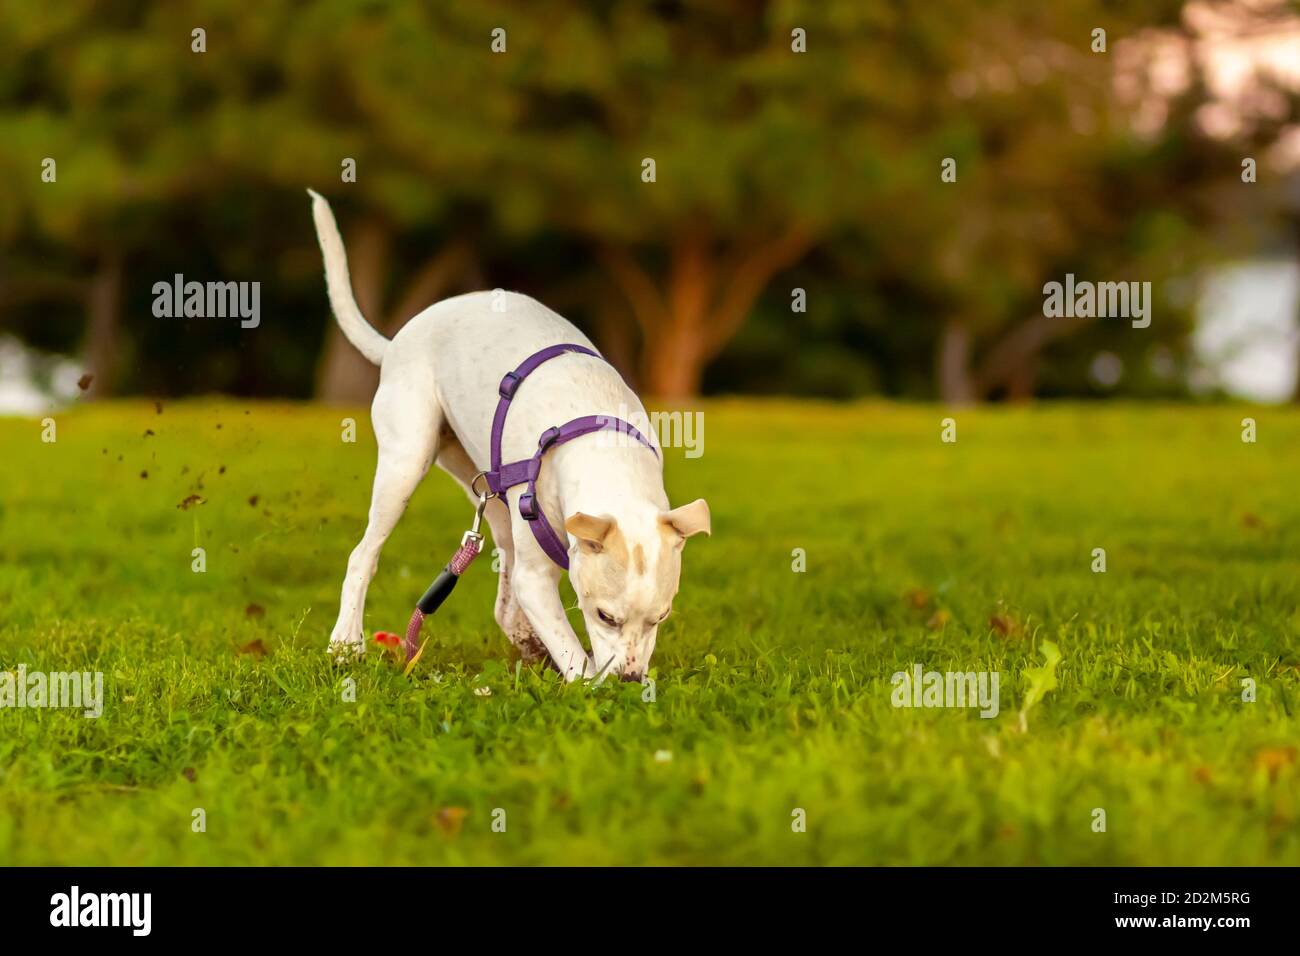 un mignon petit chien terrier avec des fourrures blanches et des taches brunes claires creuse rapidement le champ d'herbe en délogeant beaucoup de boue et de saleté. Le chien curieux Banque D'Images